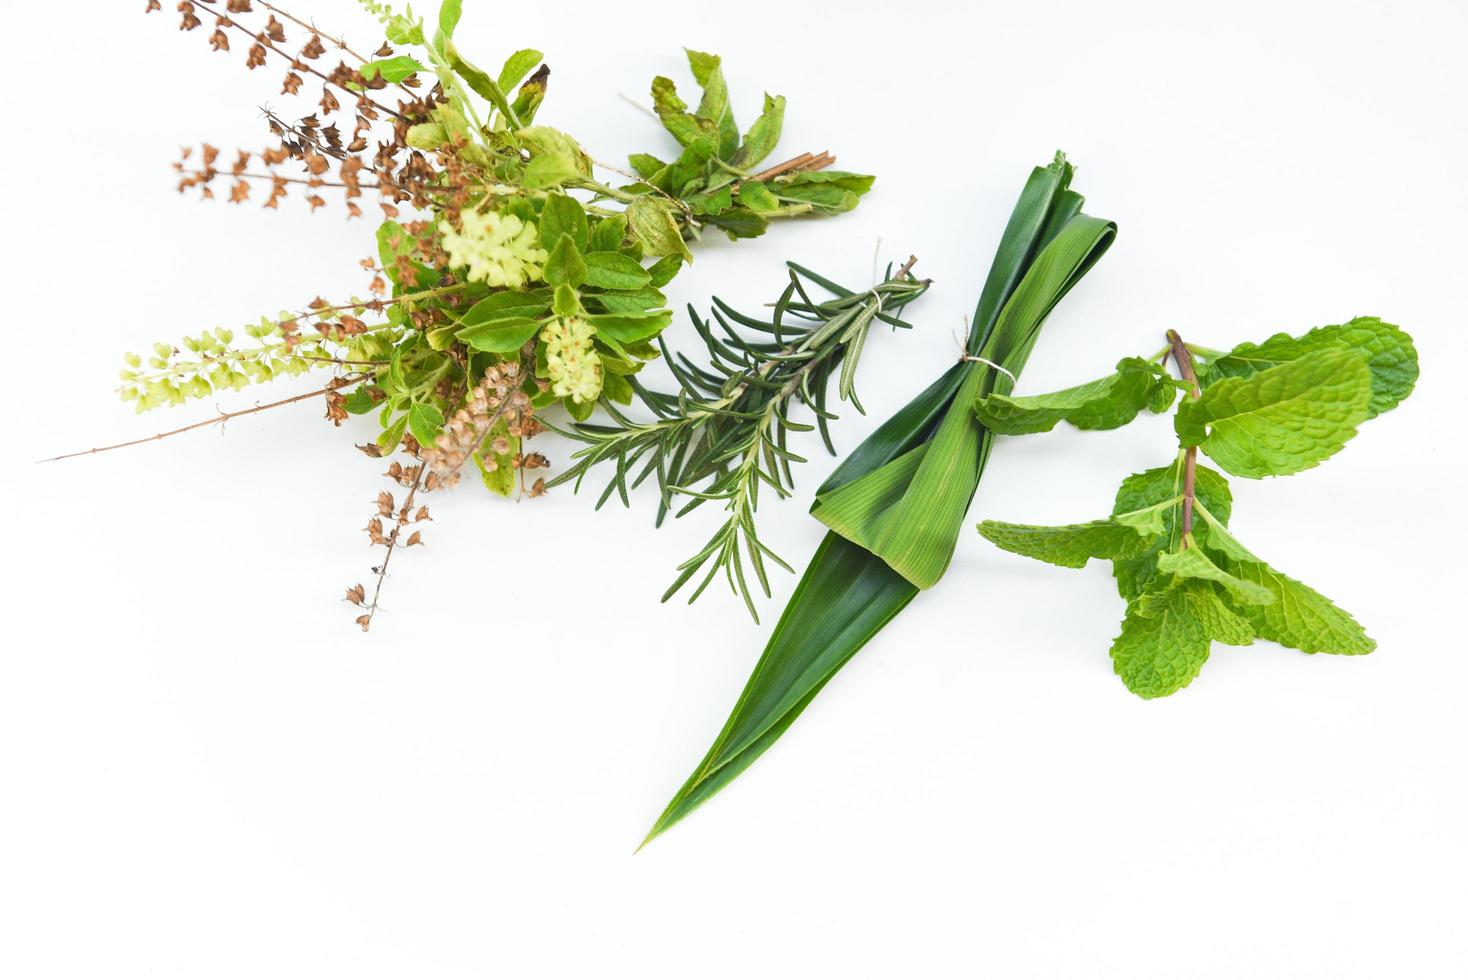 concetto di giardino delle erbe da cucina - erbe fresche naturali e spezie su sfondo bianco in cucina per ingredienti alimentari foto